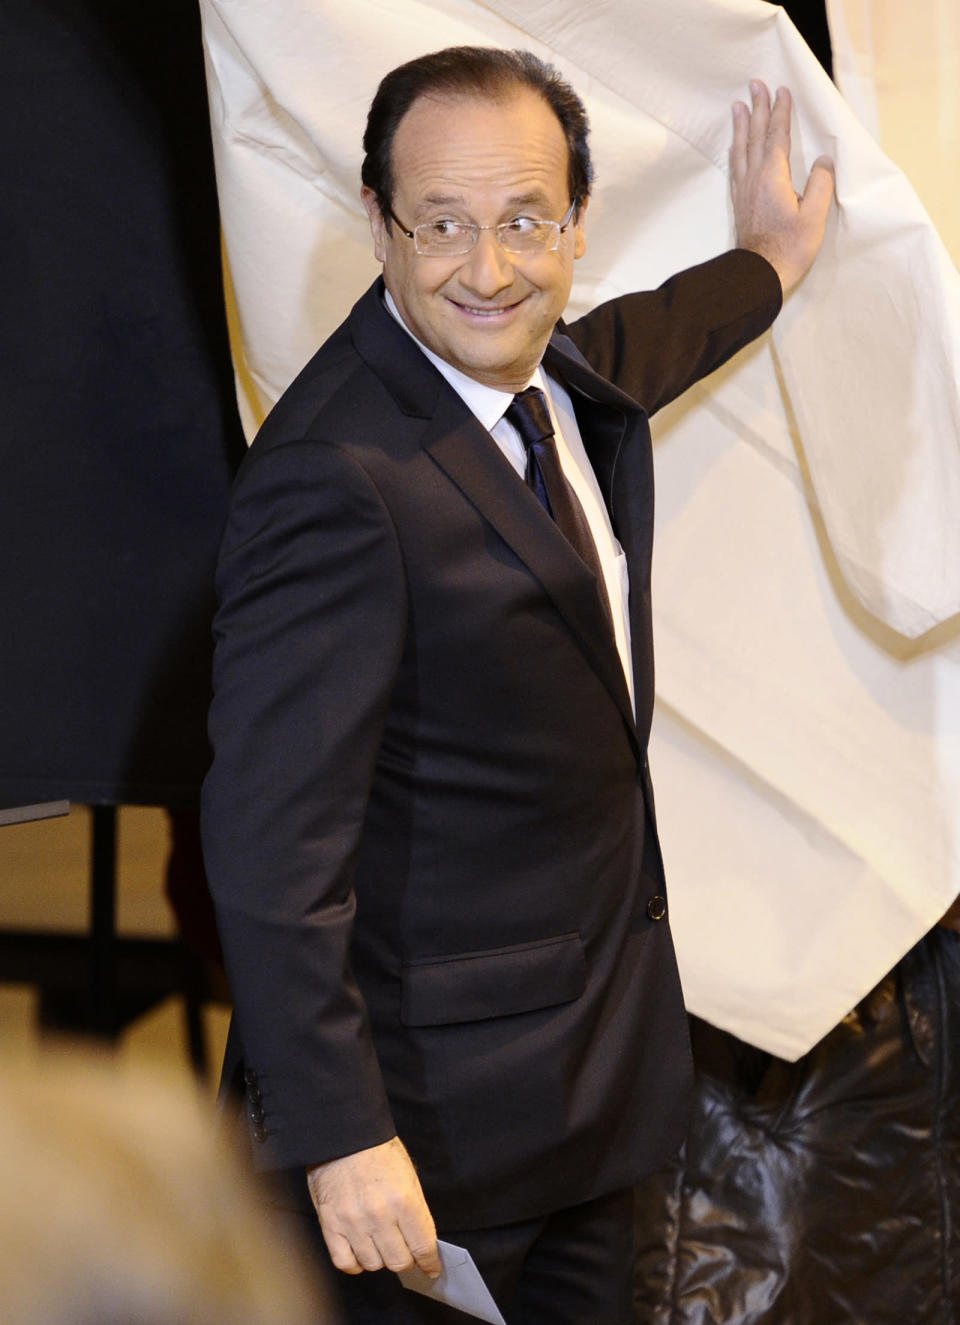 10h30. Dans son fief corrézien, le candidat PS François Hollande se rend dans son bureau de vote de Tulle pour glisser son bulletin dans l'urne. AFP/Fred Dufour